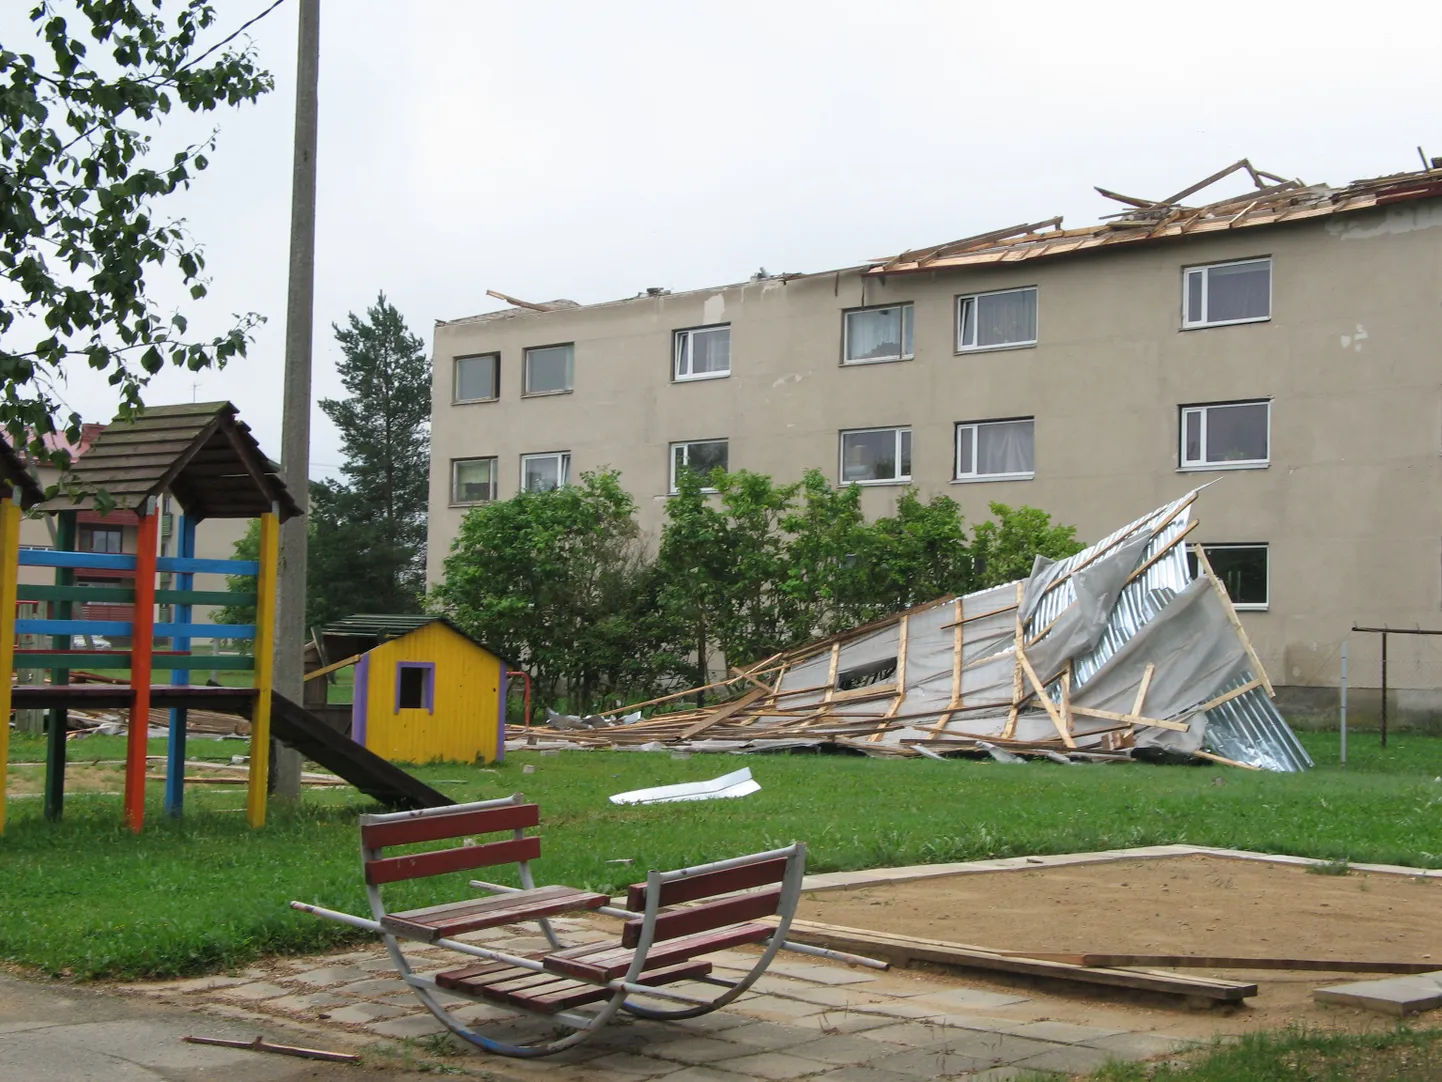 Крышу жилого дома ветром сбросило на детсад.